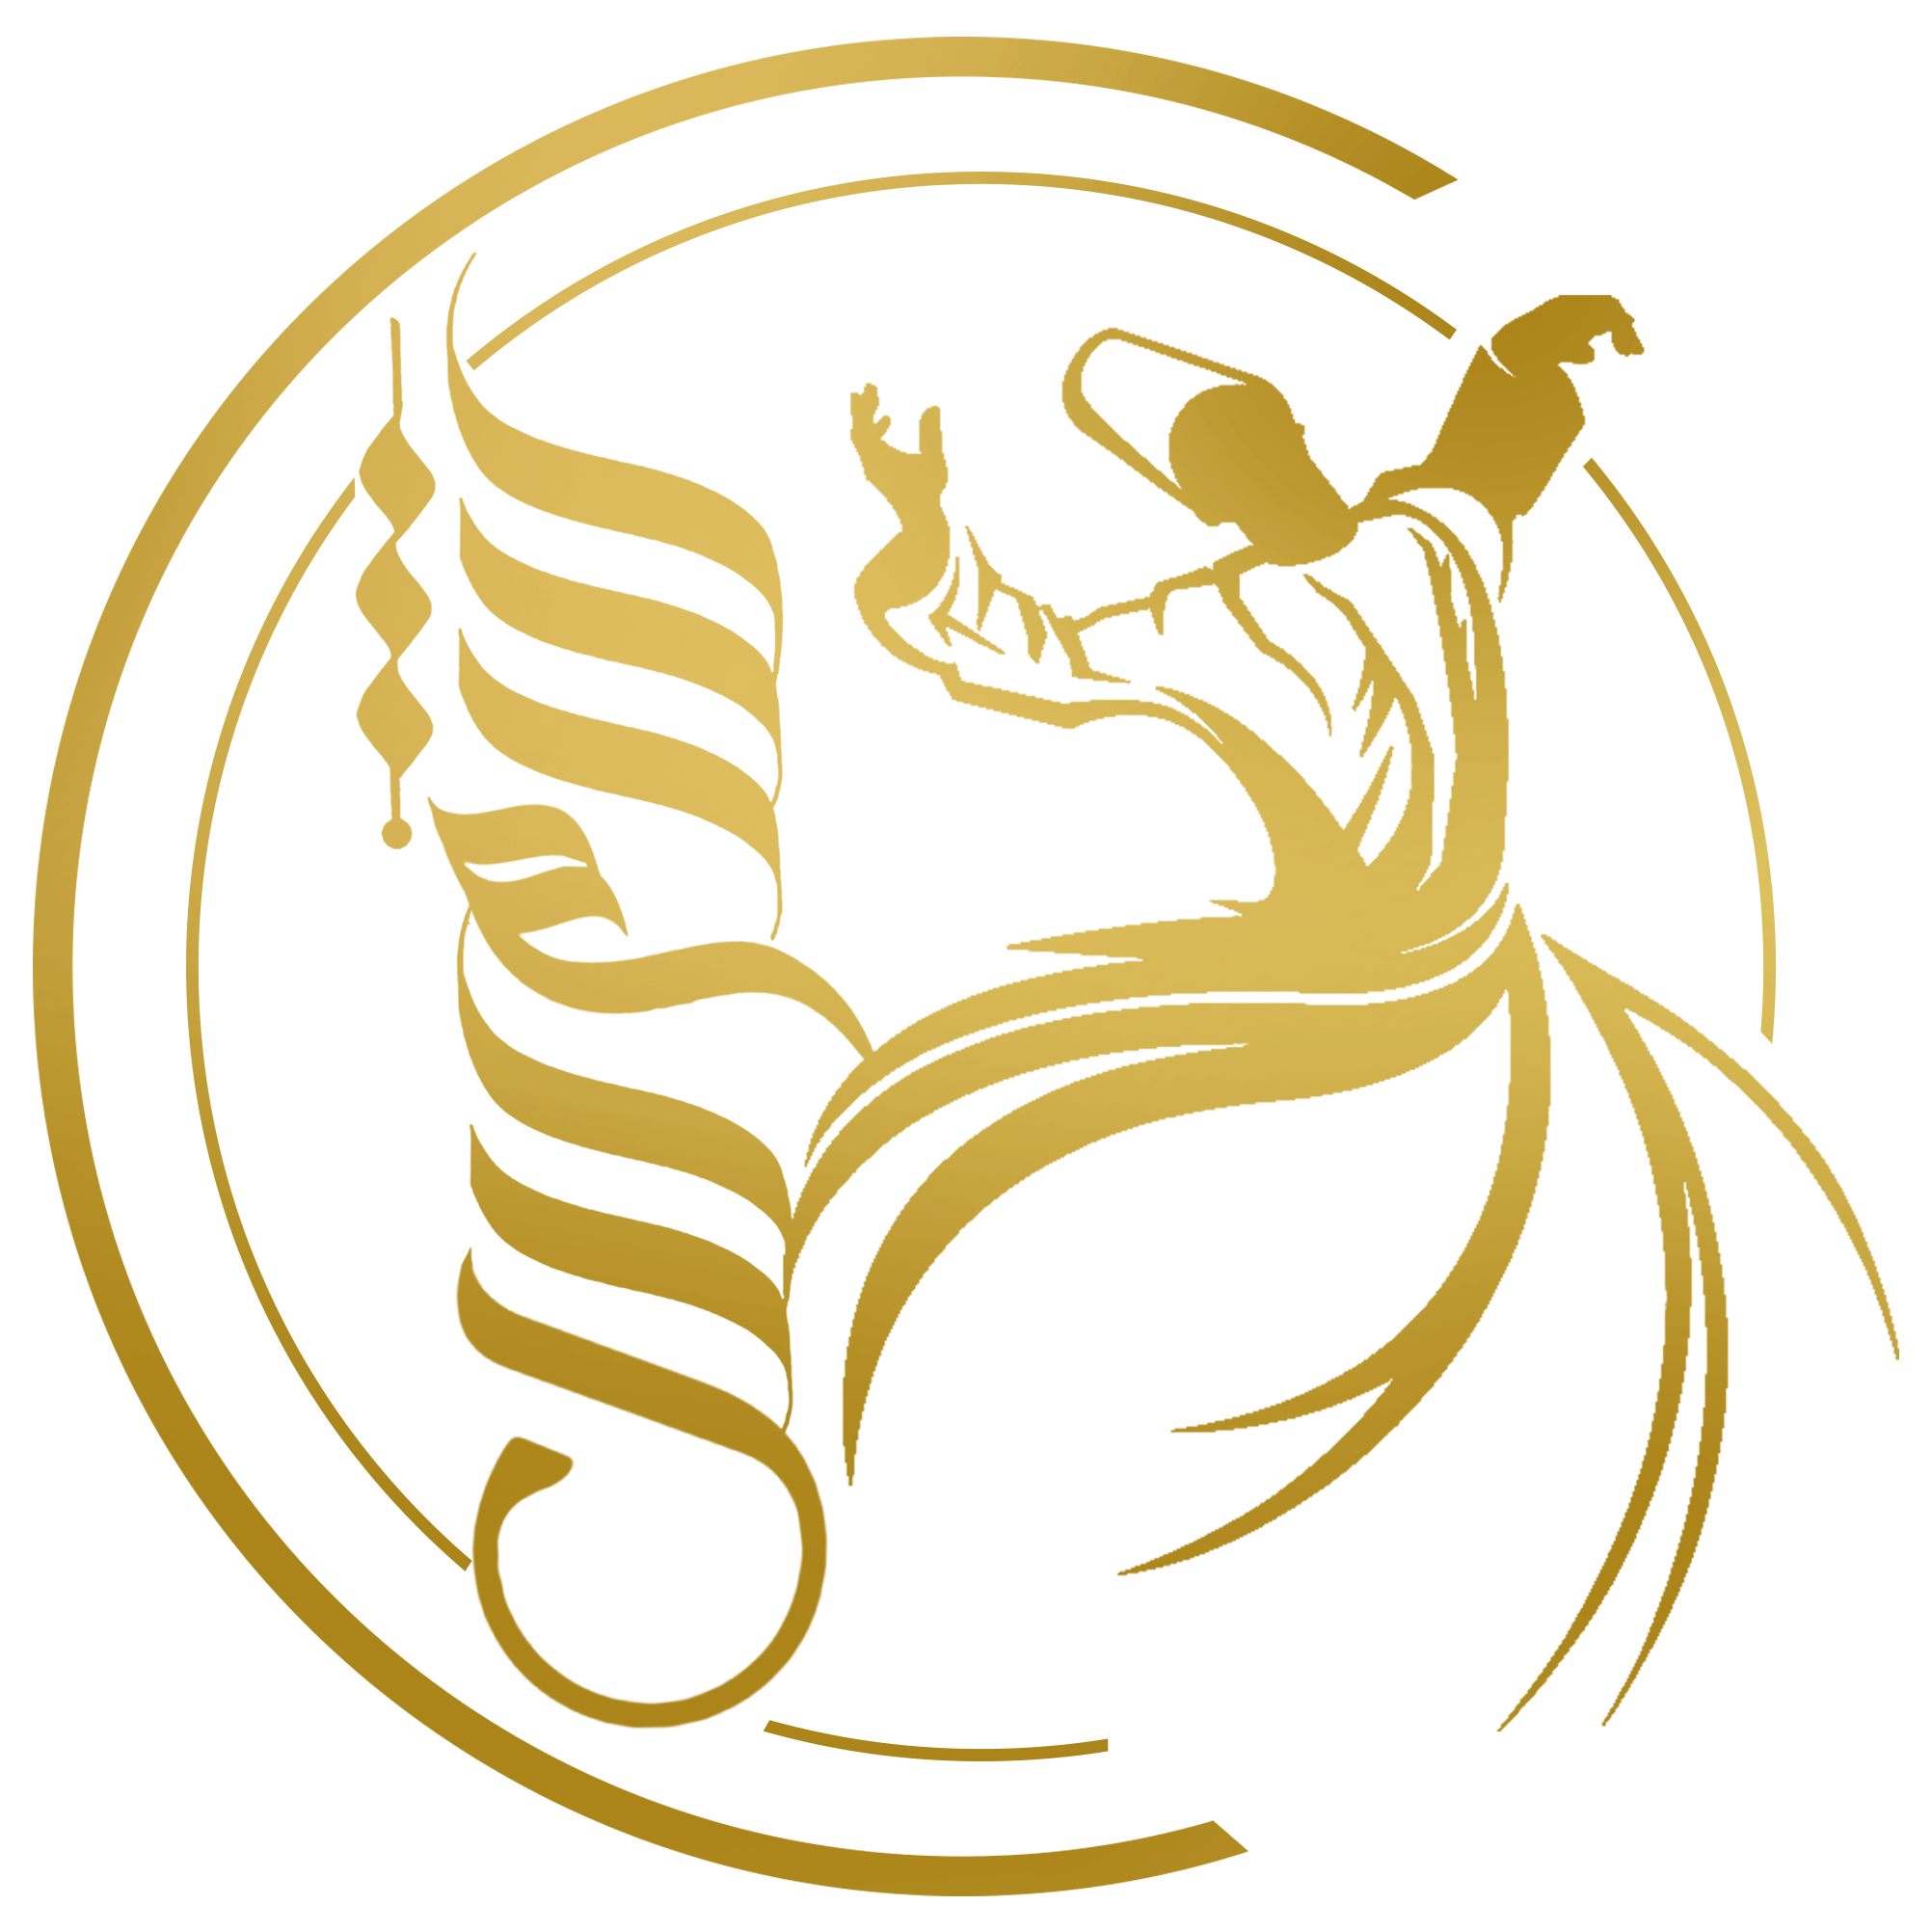 sham gold logo